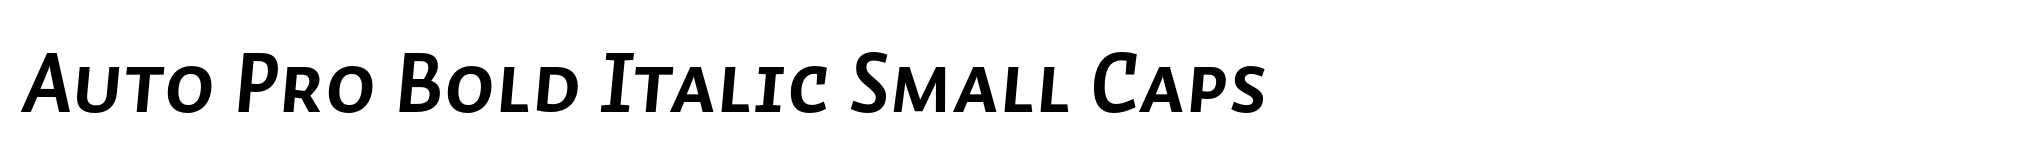 Auto Pro Bold Italic Small Caps image